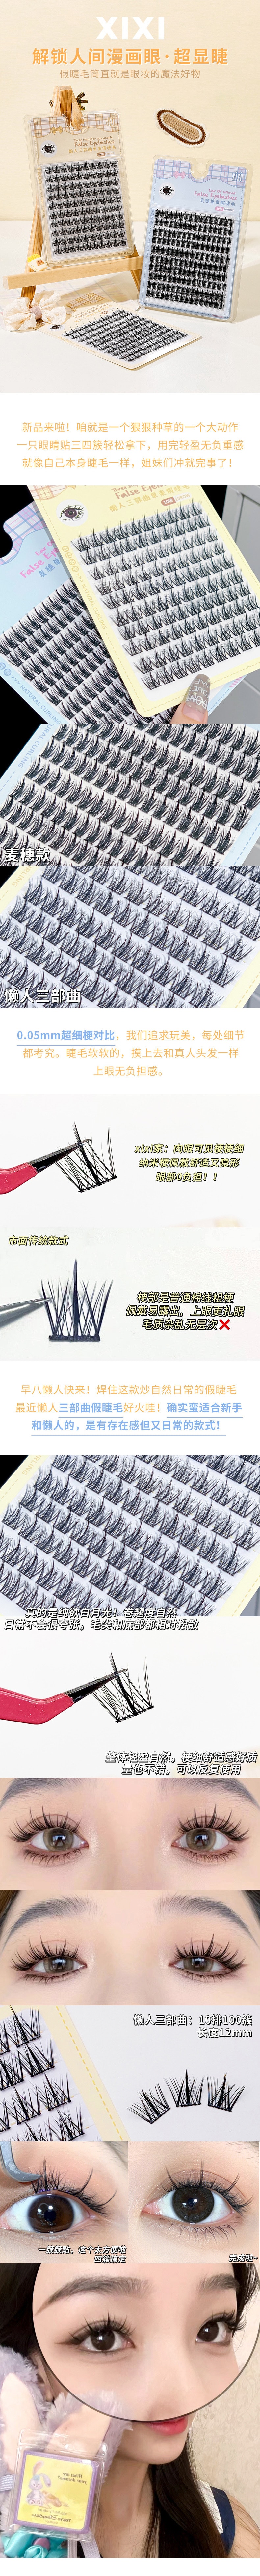 中国 xixi【新款】10排大容量超细梗分段式睫毛 #麦穗款 送美睫4件